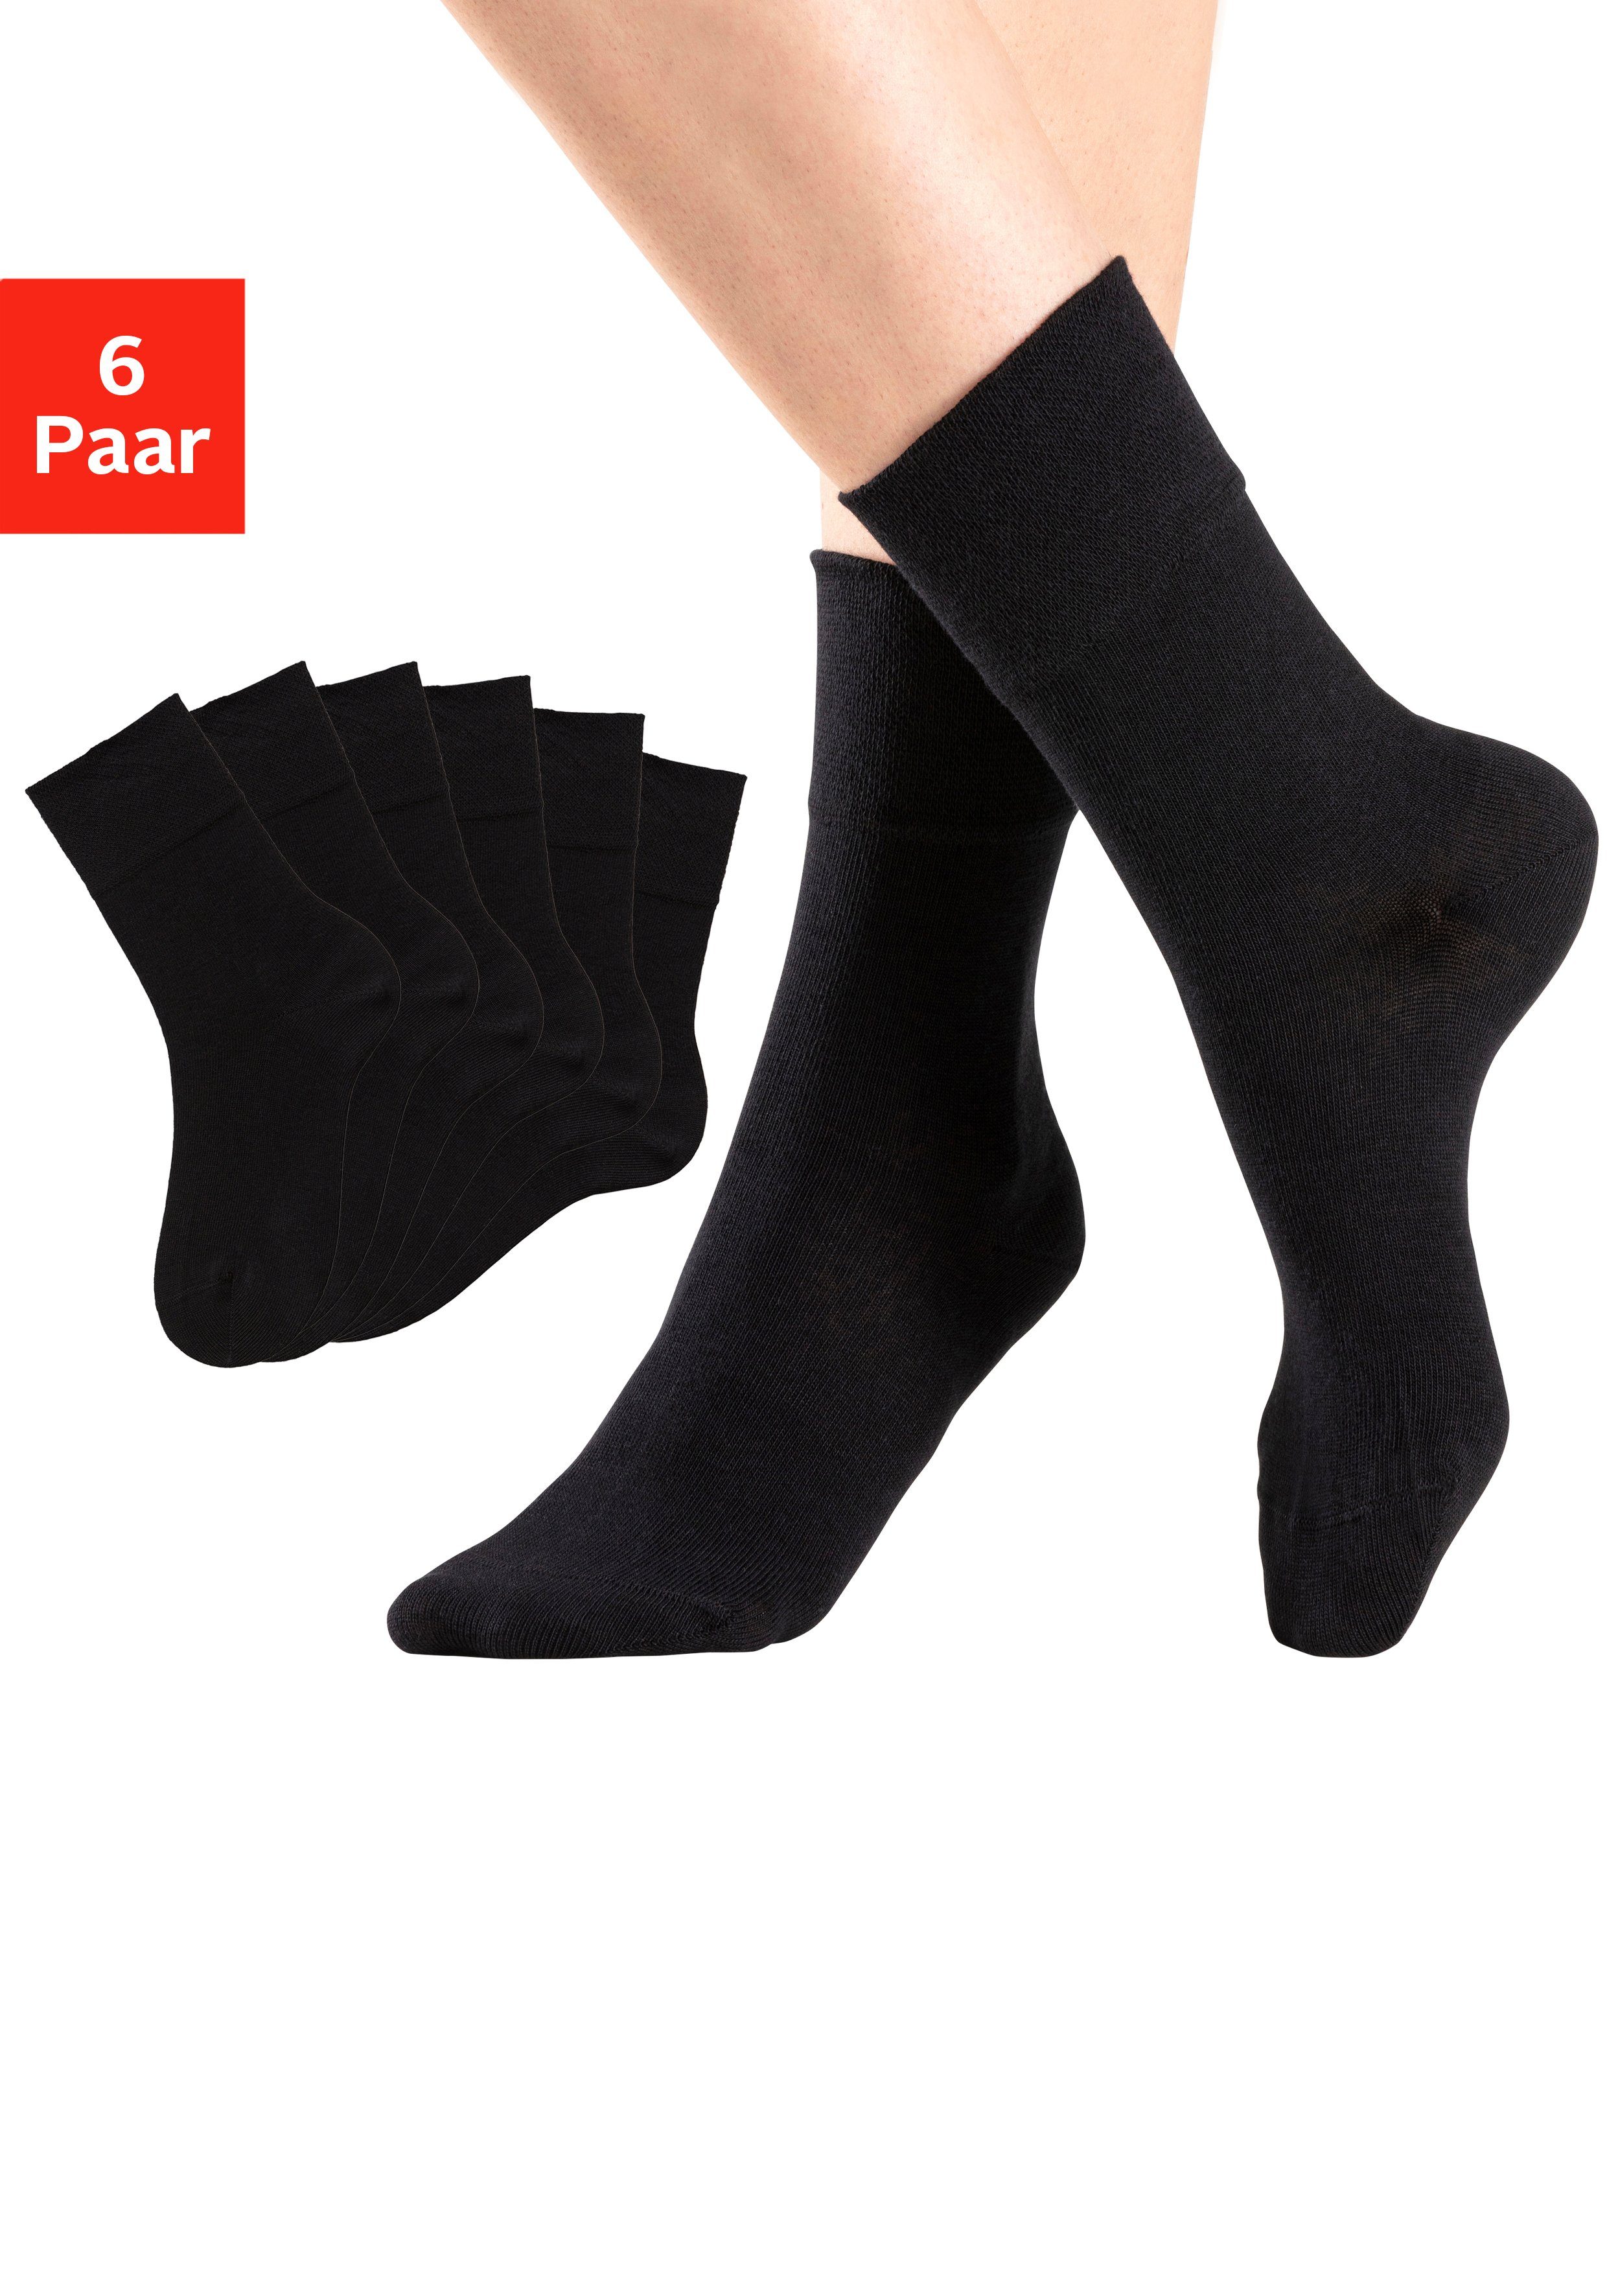 H.I.S Socken (Packung, 6-Paar) mit Komfortbund auch für Diabetiker geeignet